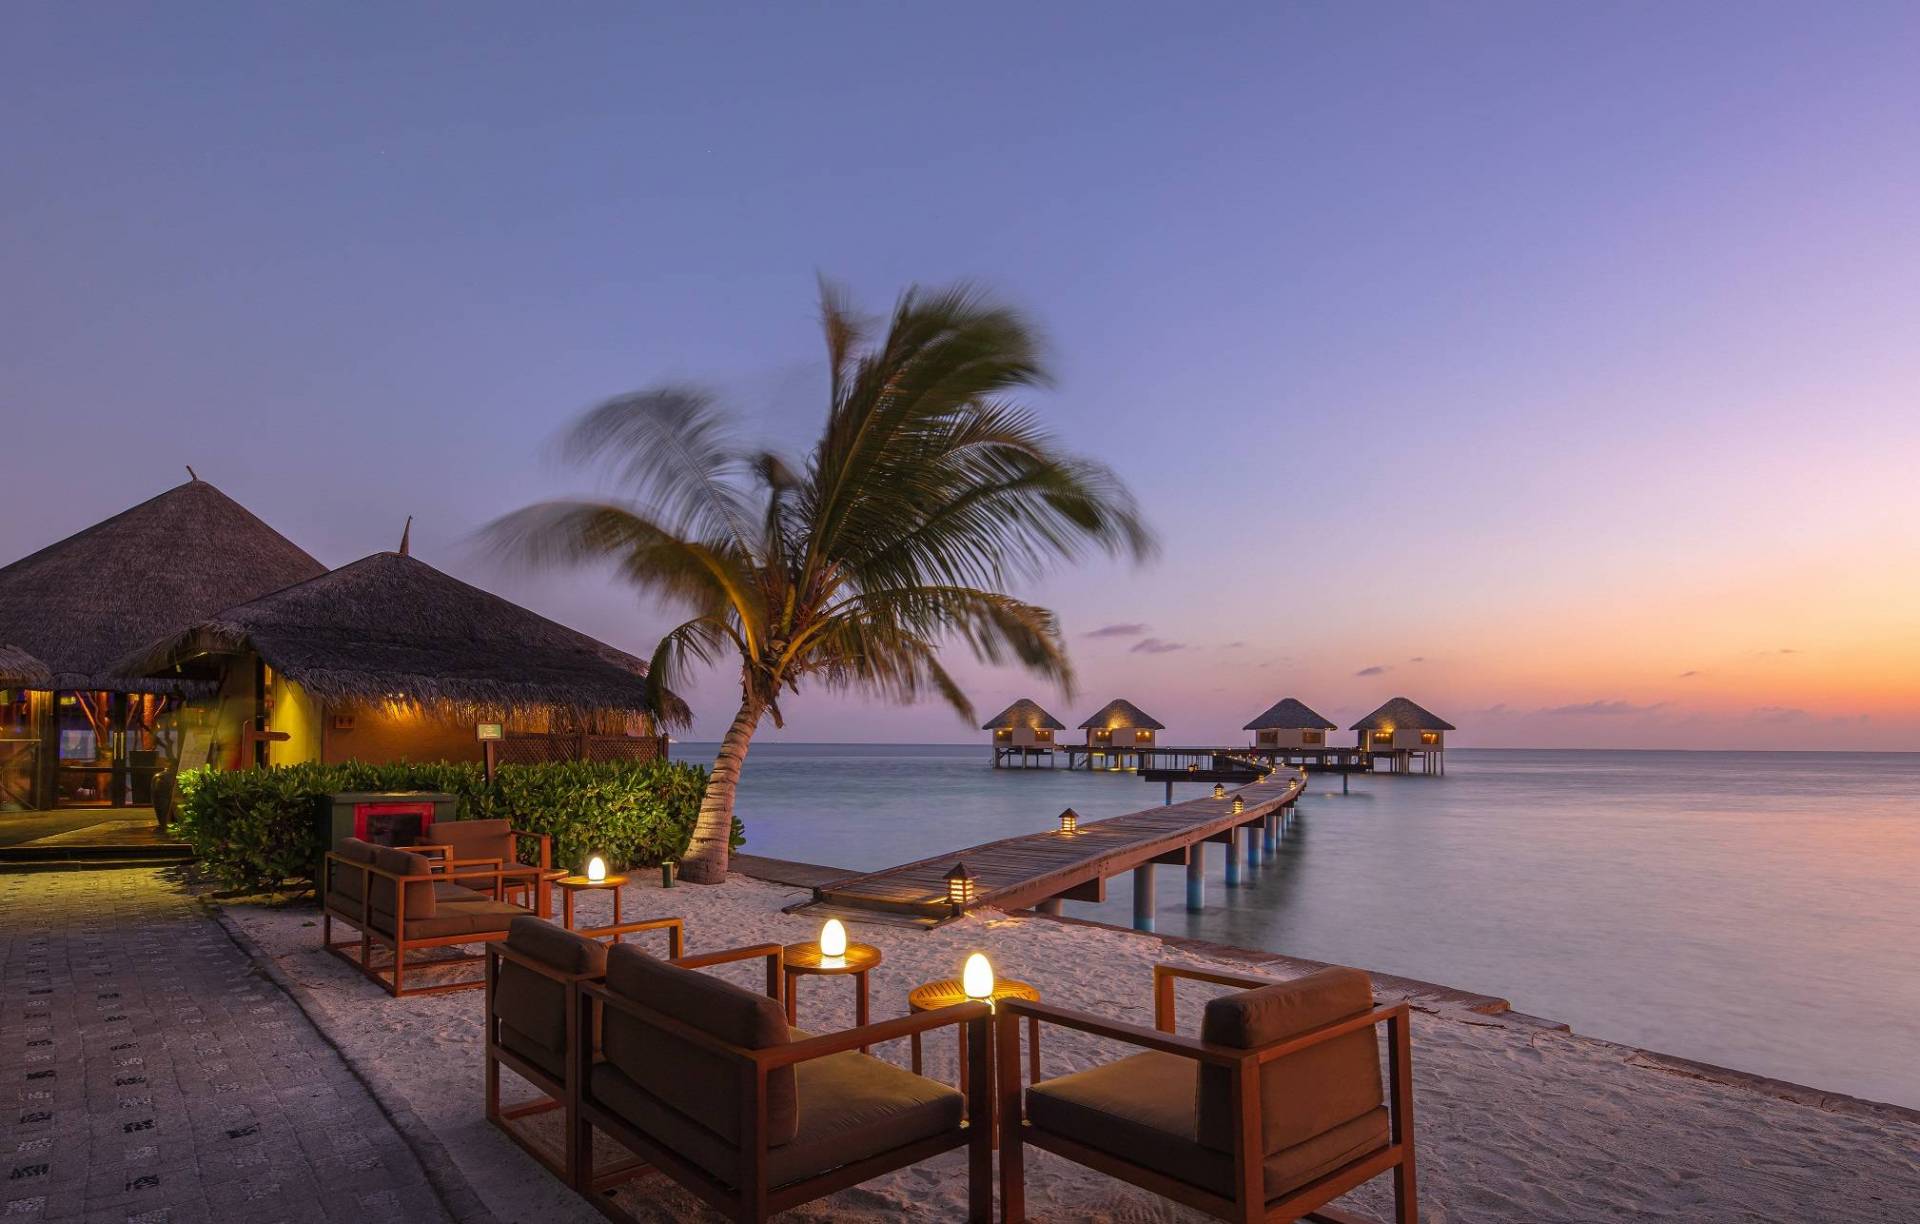 أفضل 5 منتجعات فاخرة في جزر المالديف لقضاء عطلة رومانسية في يوم الحب | Laha  Magazine